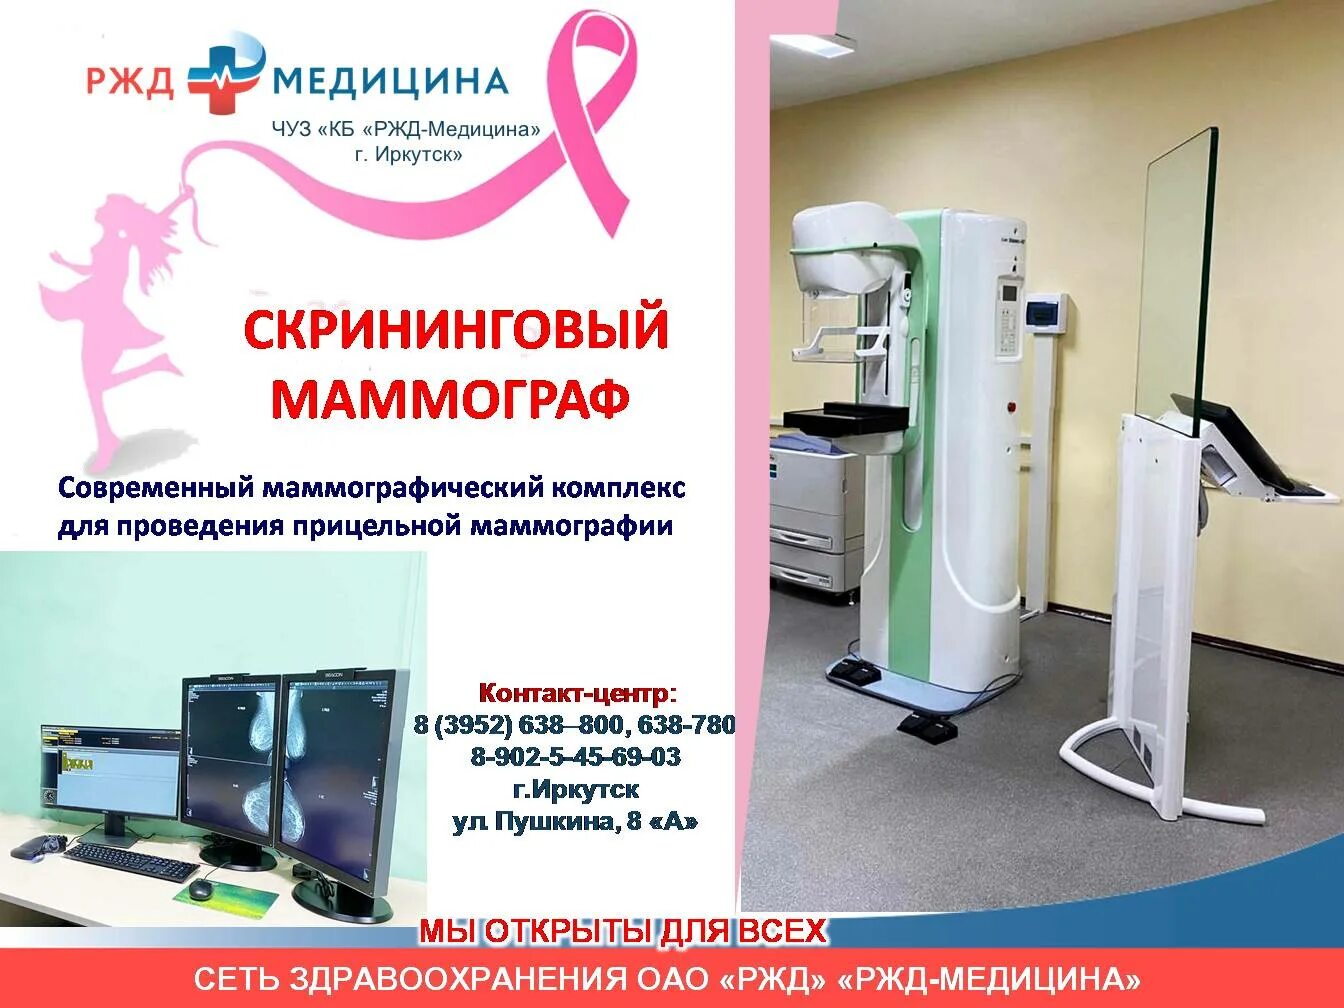 Маммография. Оборудование для маммографии. Аппарат для маммографии. Маммография аппарат в поликлинике. Как сделать маммографию в поликлинике